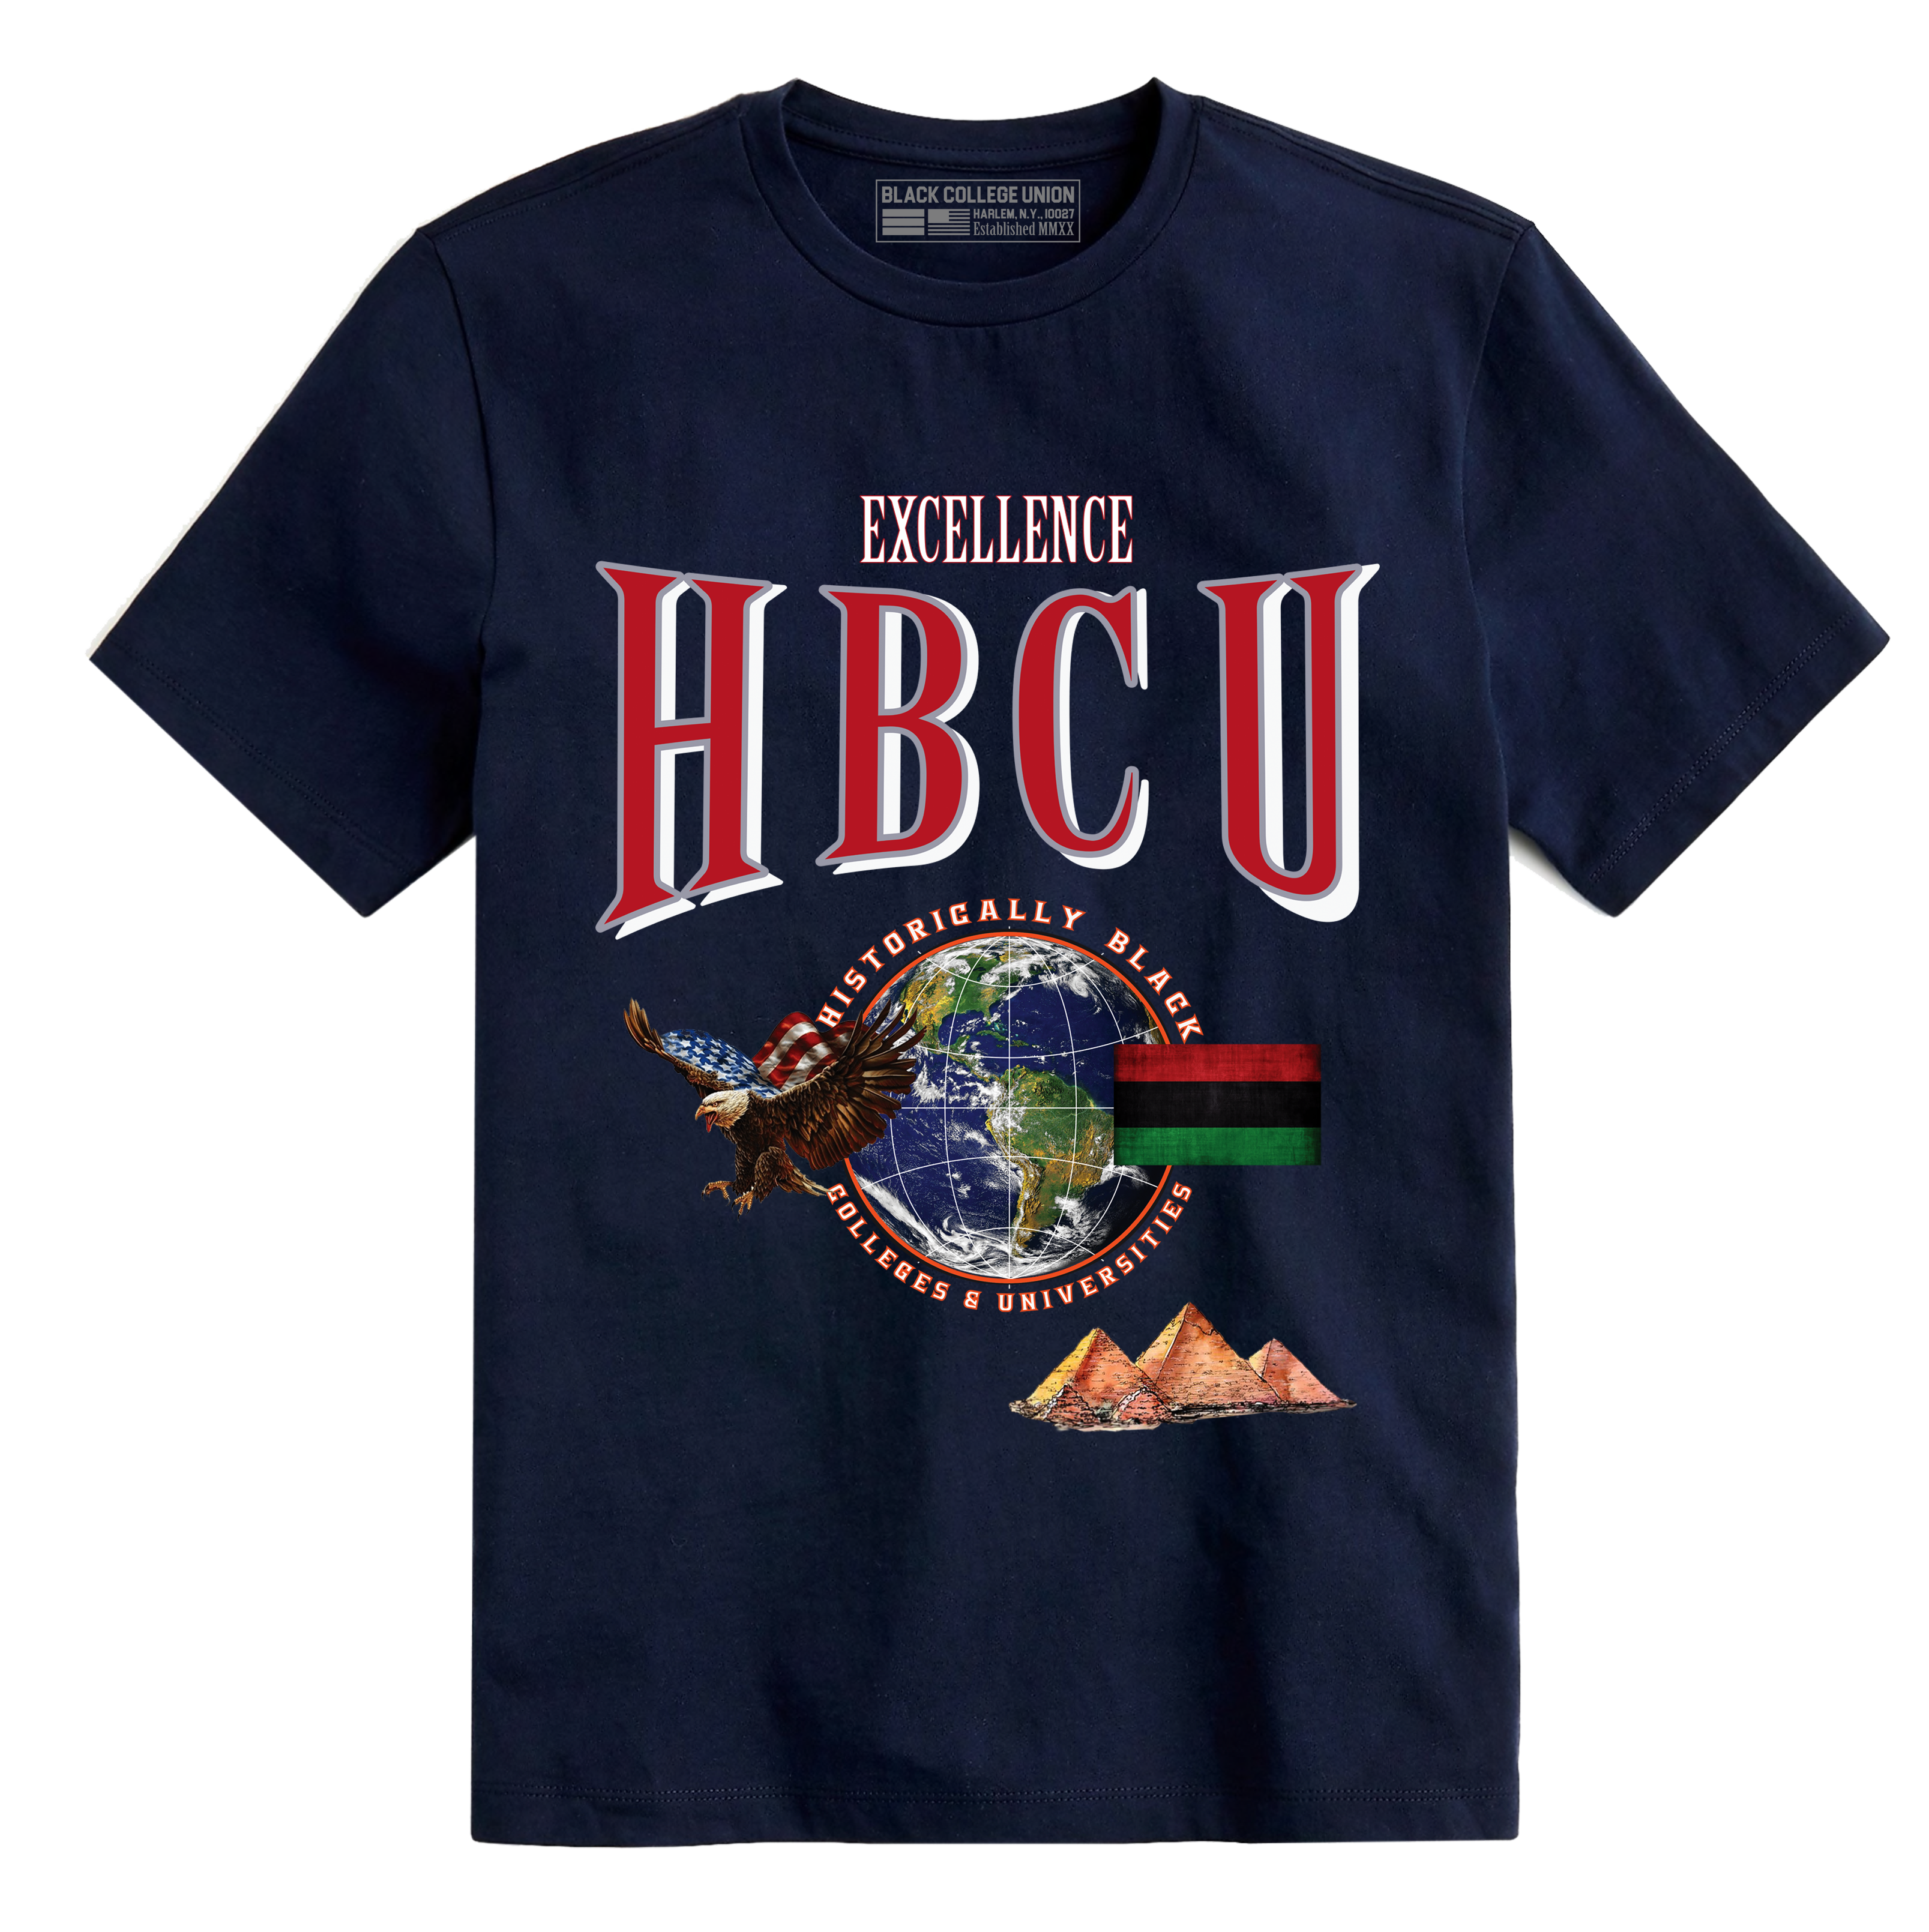 HBCU Stones T-Shirt